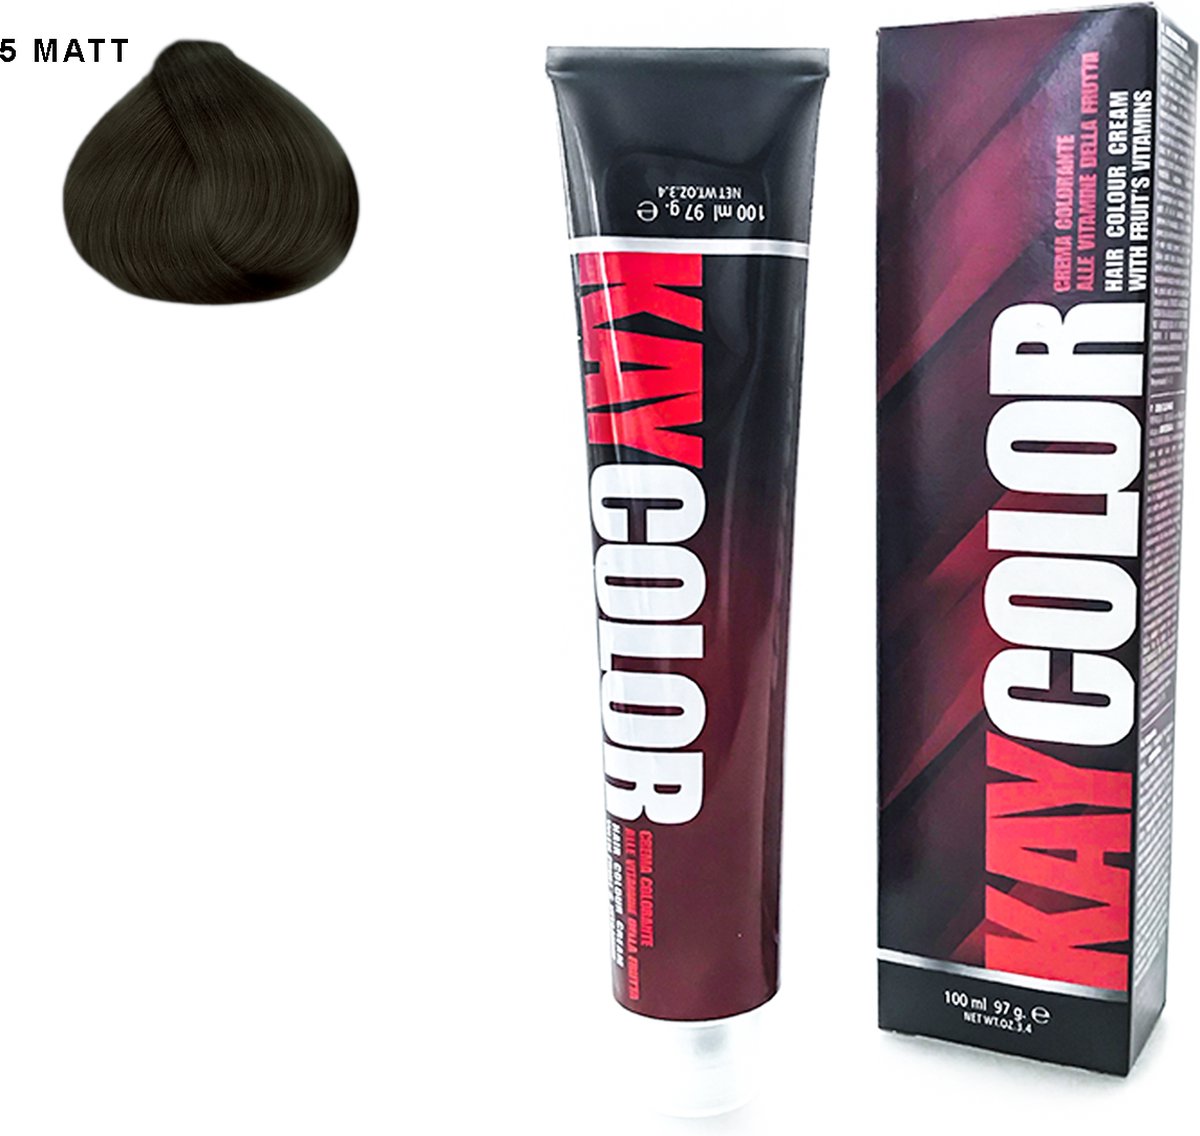 Kay Color - Kay Color Hair Color Cream 100 ml - Matt 5 Chestnut